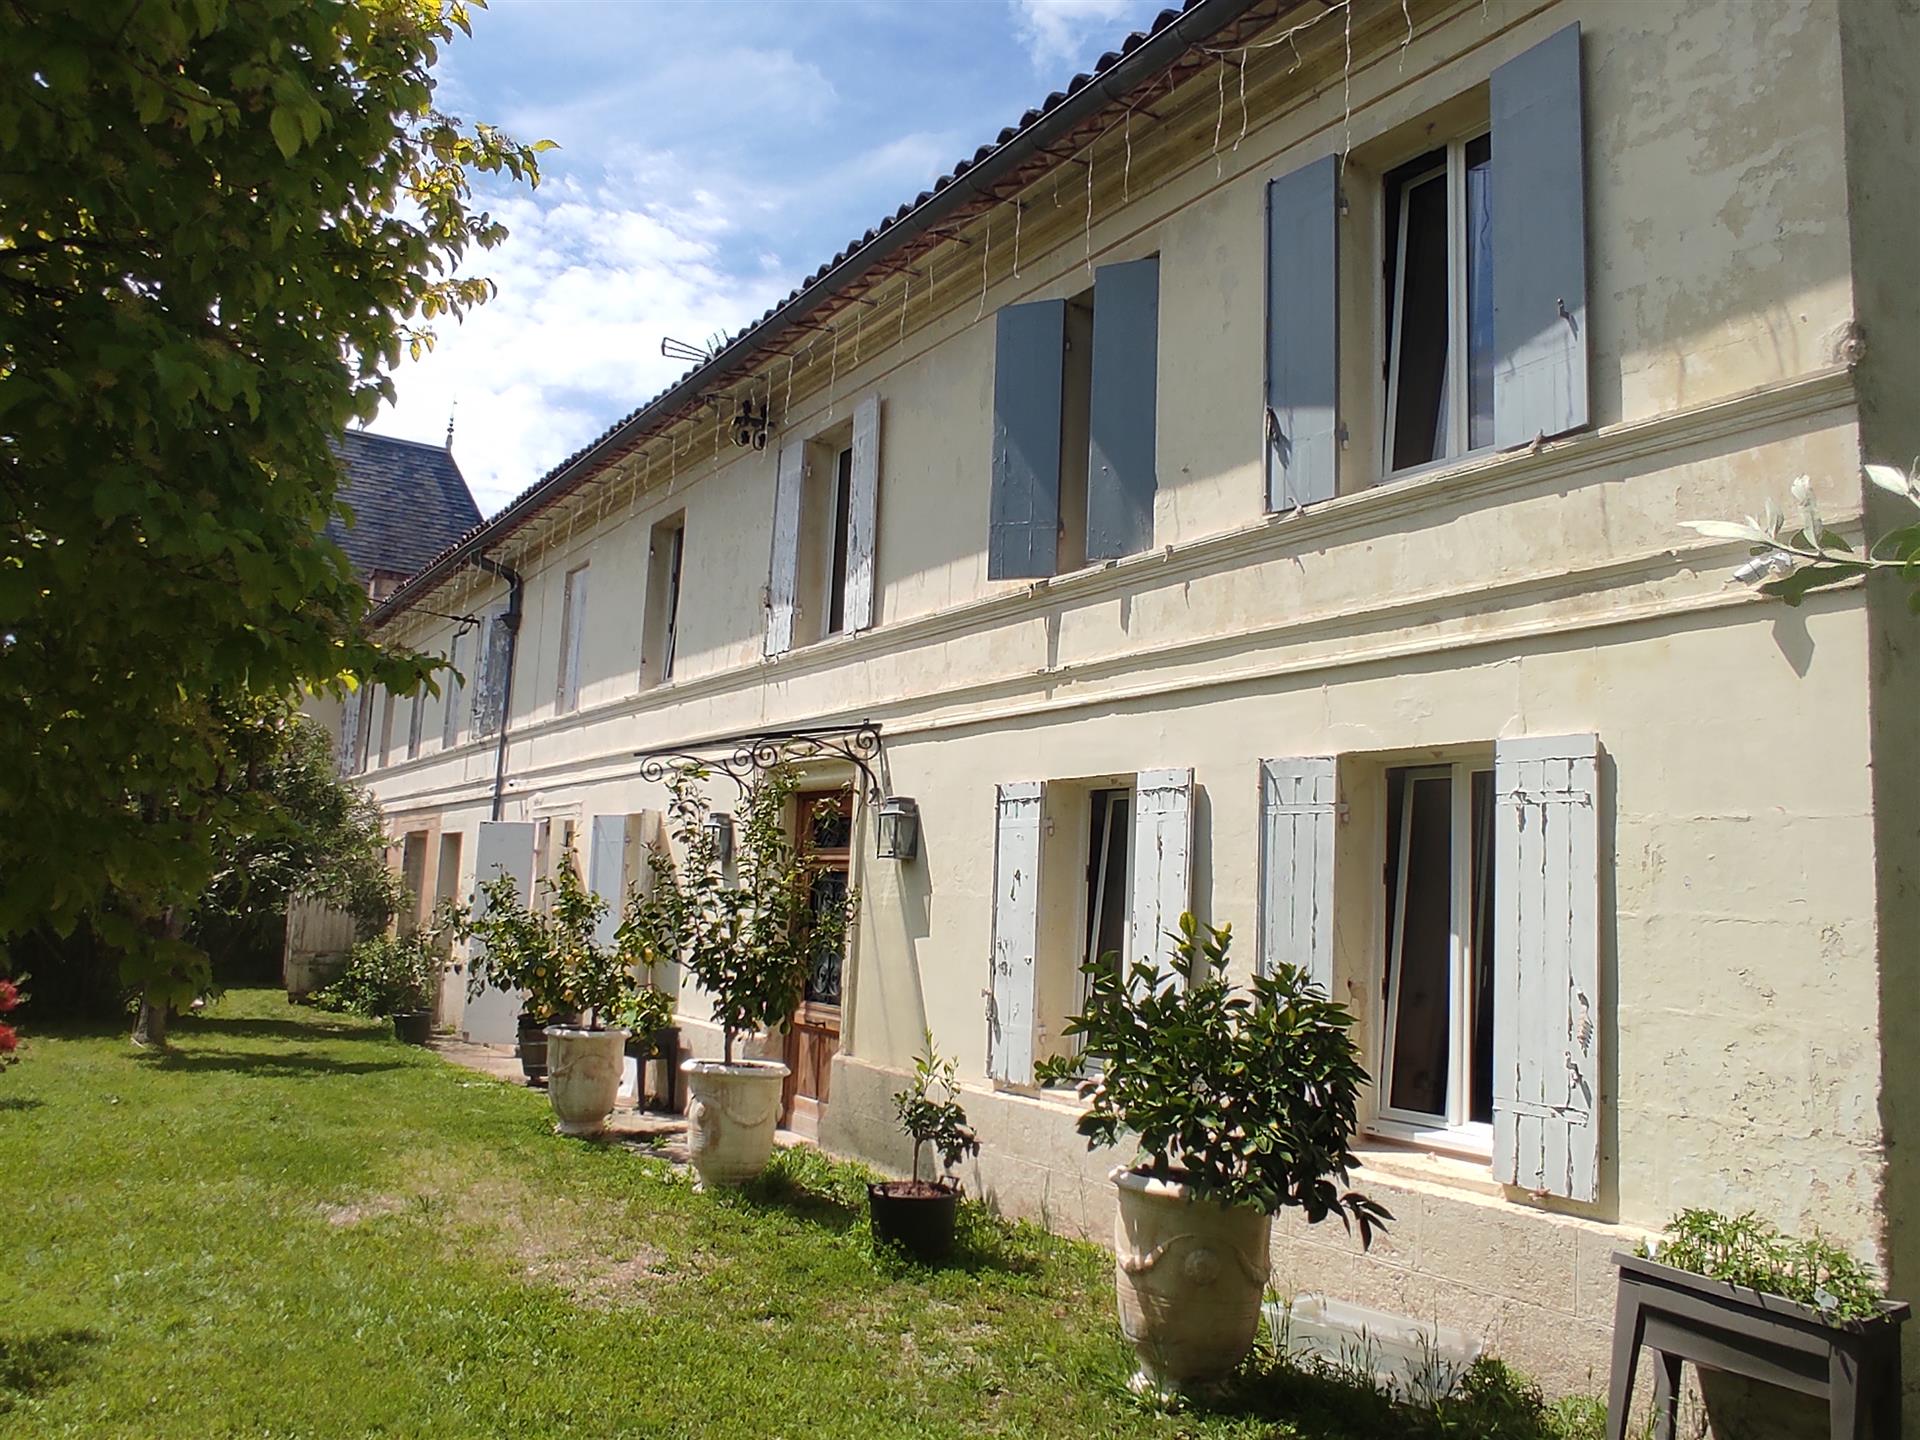 Рядка възможност за закупуване на голяма каменна къща в Saint-Andre-de-Cubzac, на 20 км от